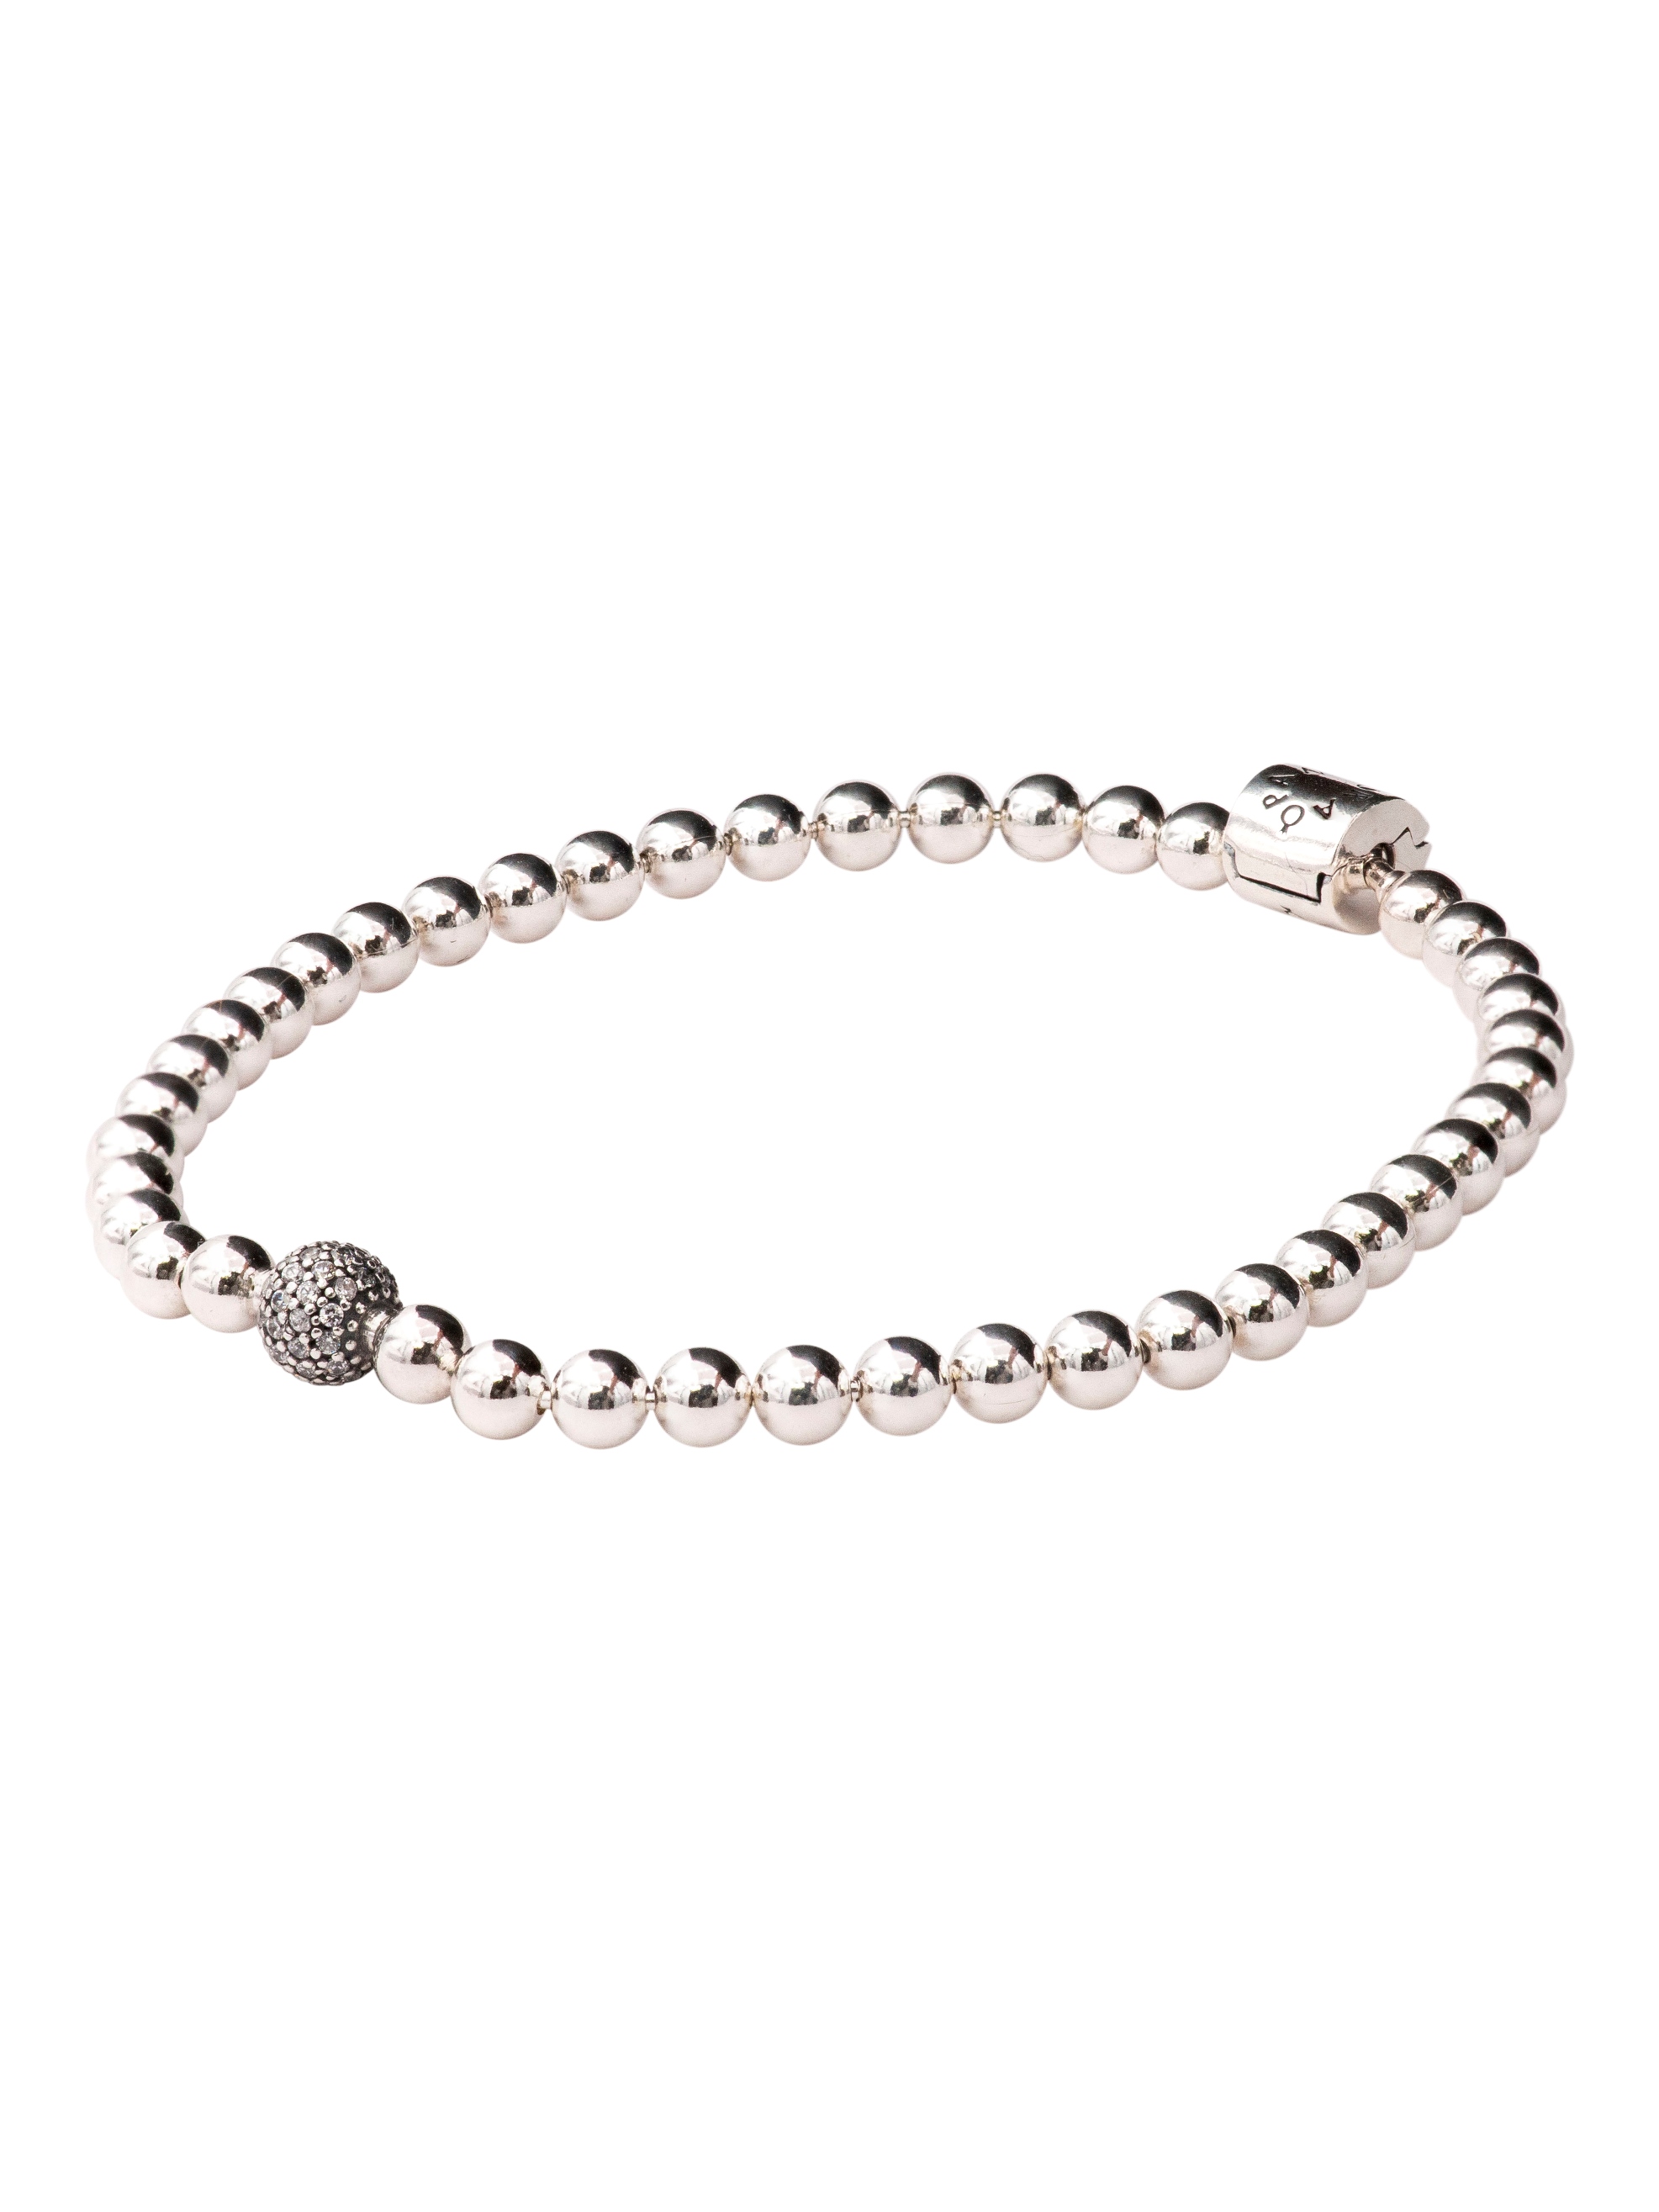 PANDORA Beads & Pave Bracelet Size 19 - 598342CZ-19